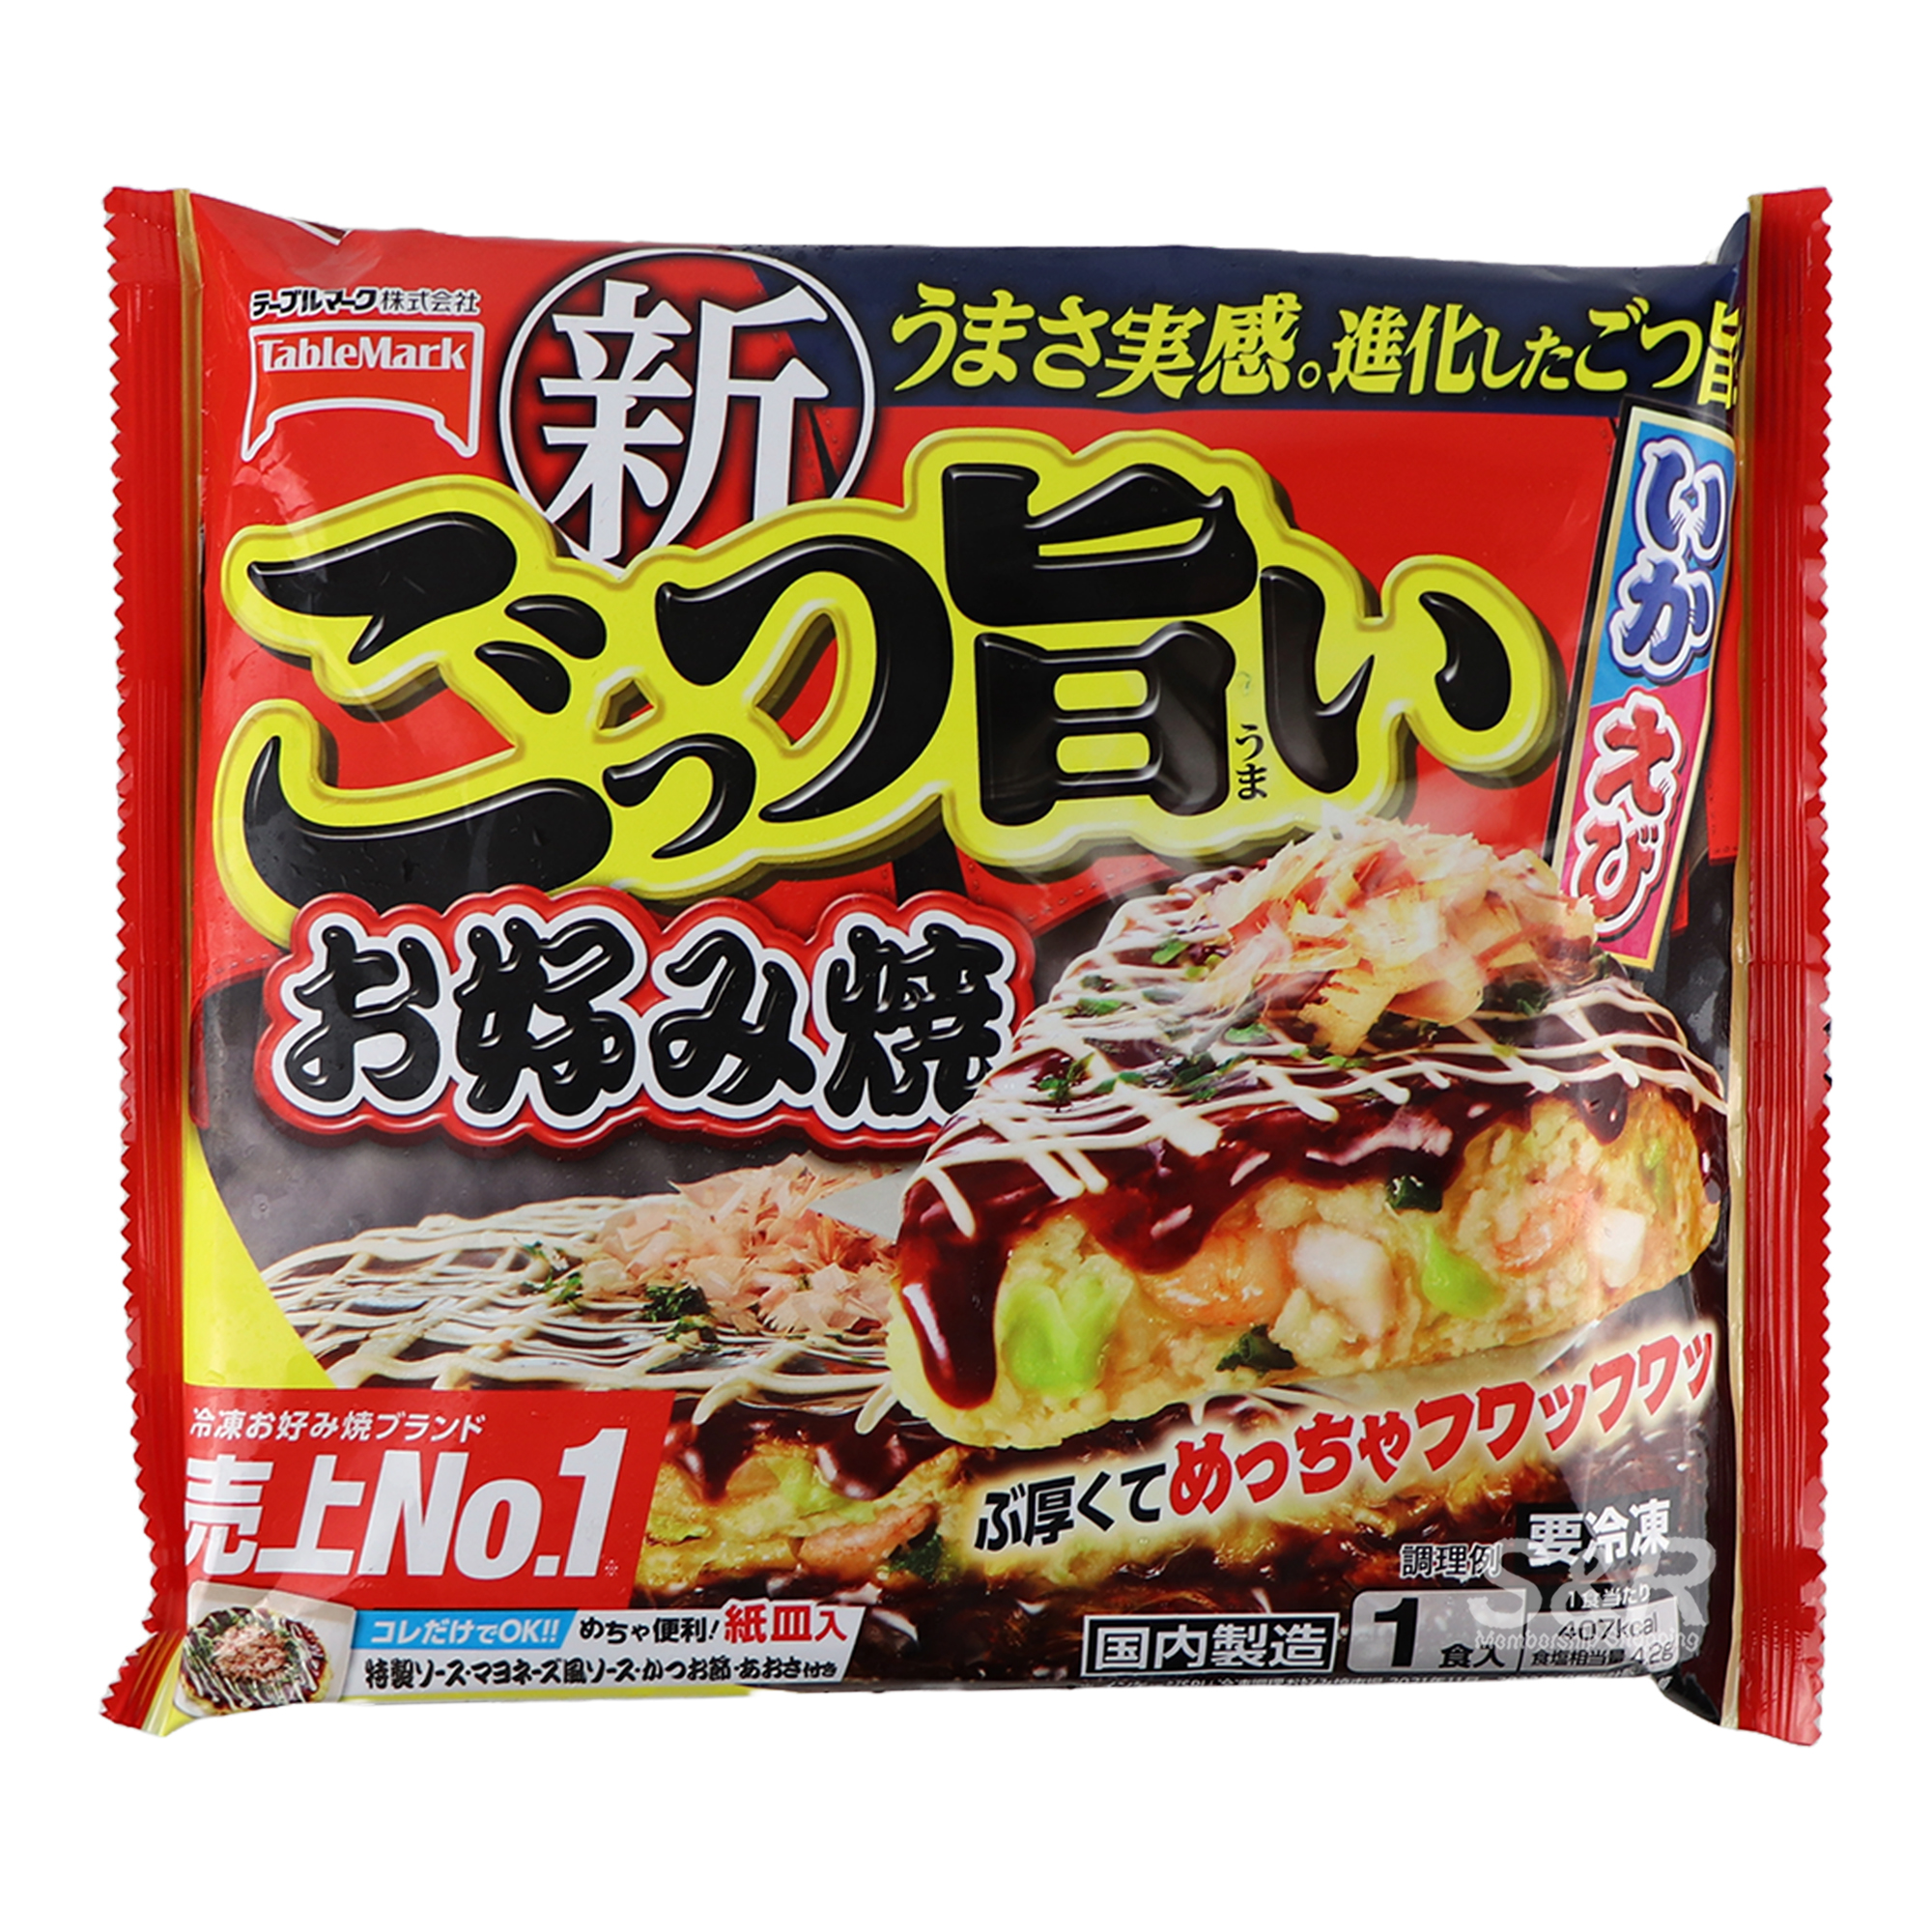 TableMark Okonomiyaki 300g